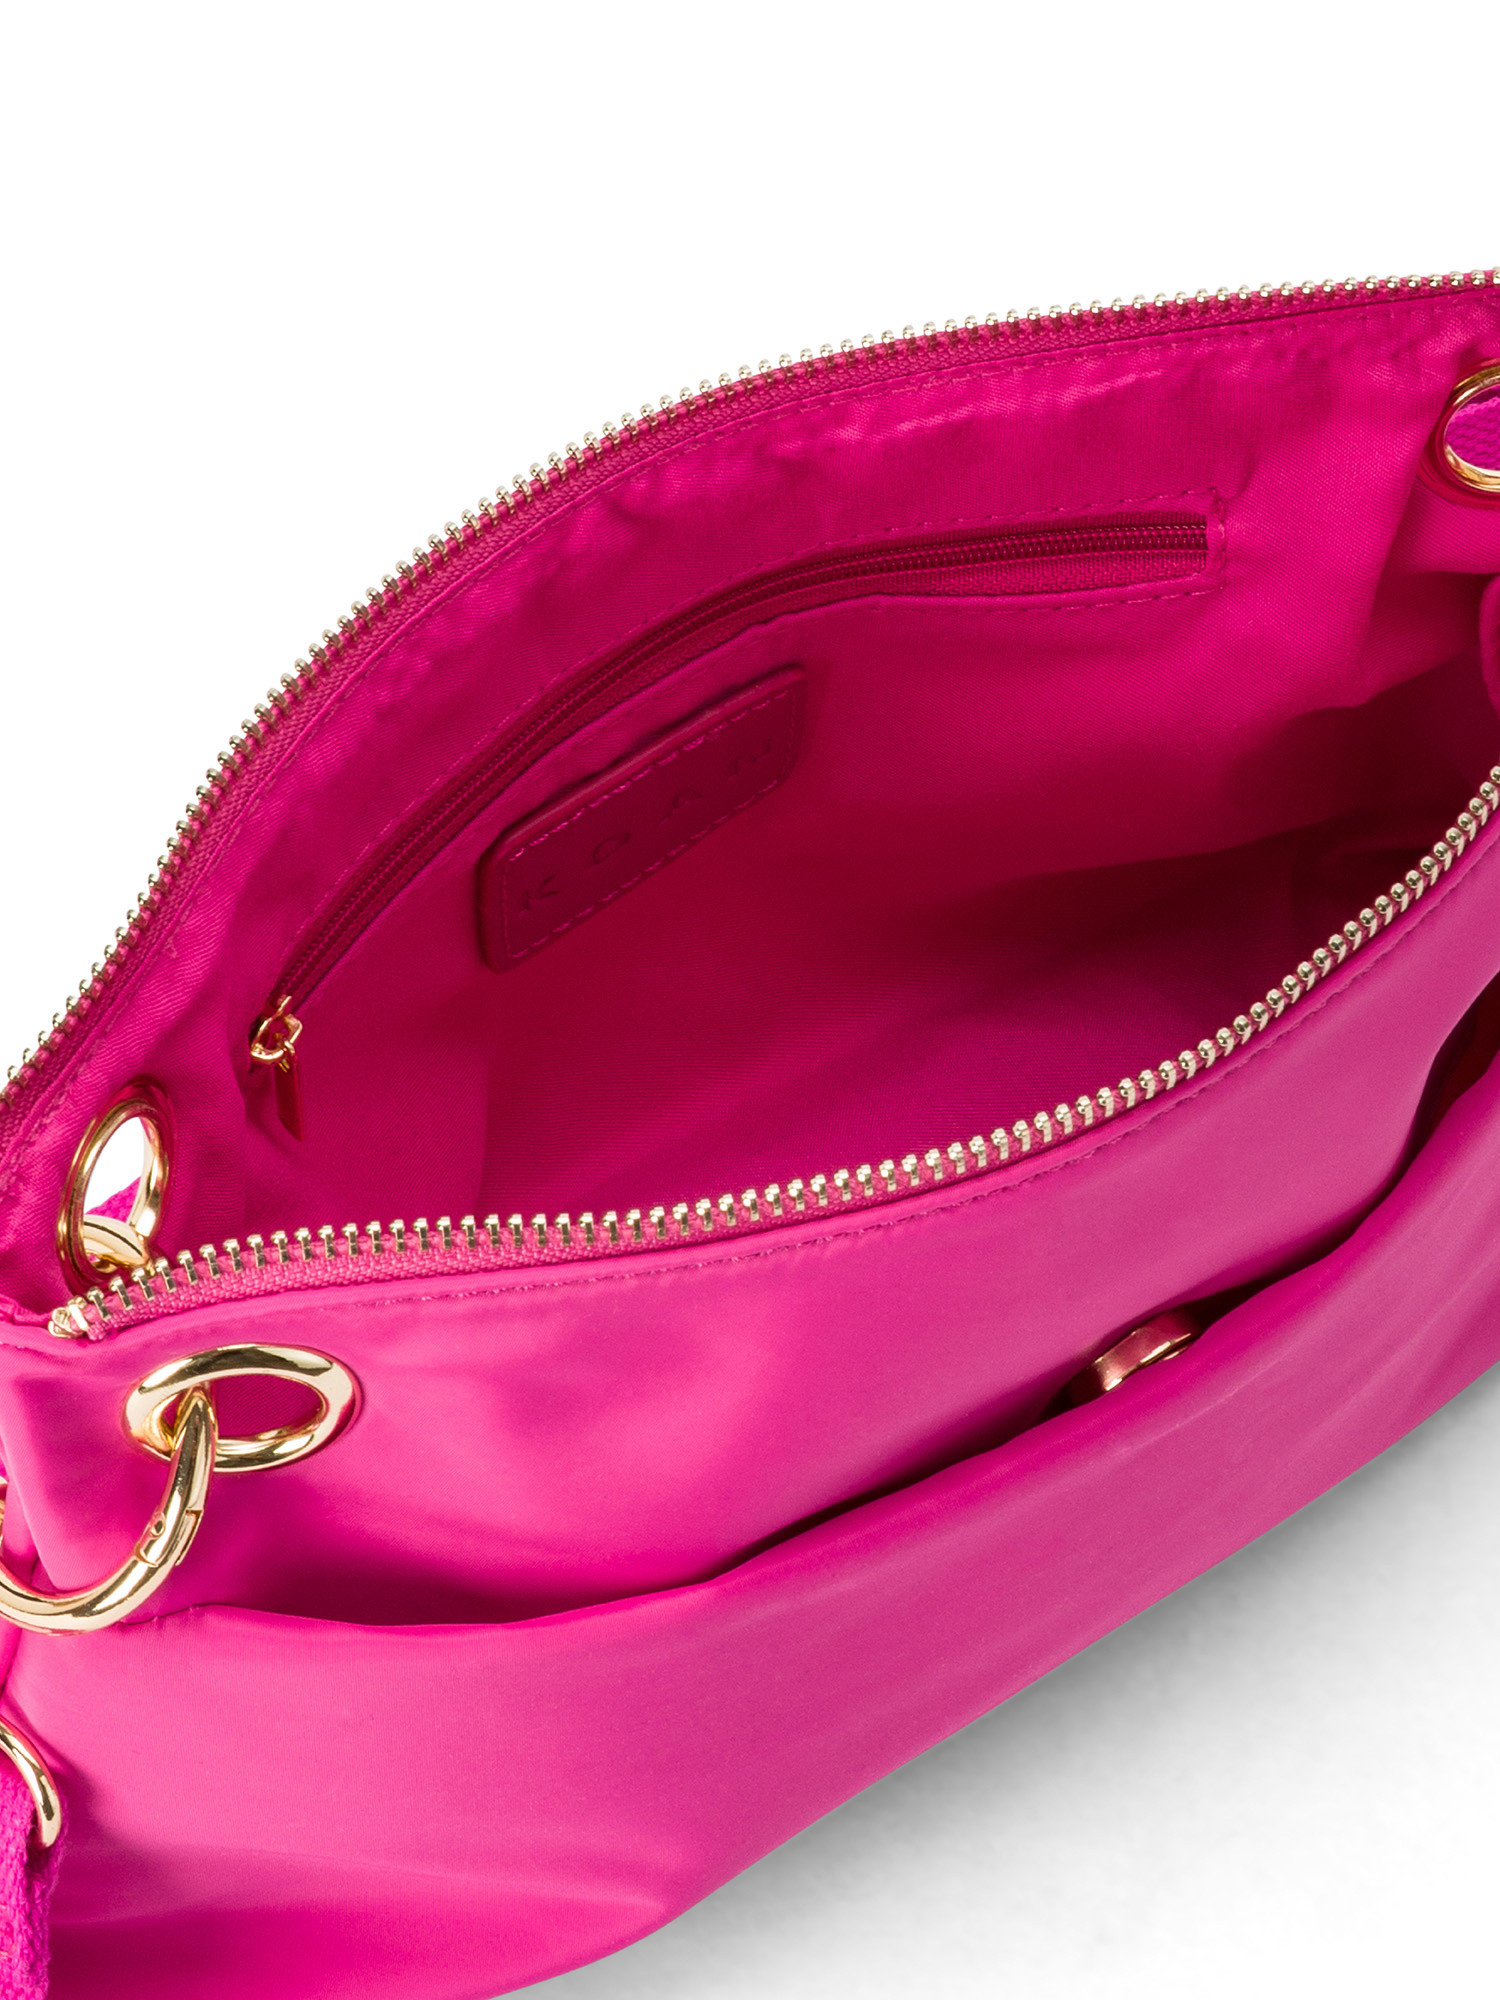 Koan - Messenger bag in nylon fabric, Dark Pink, large image number 2